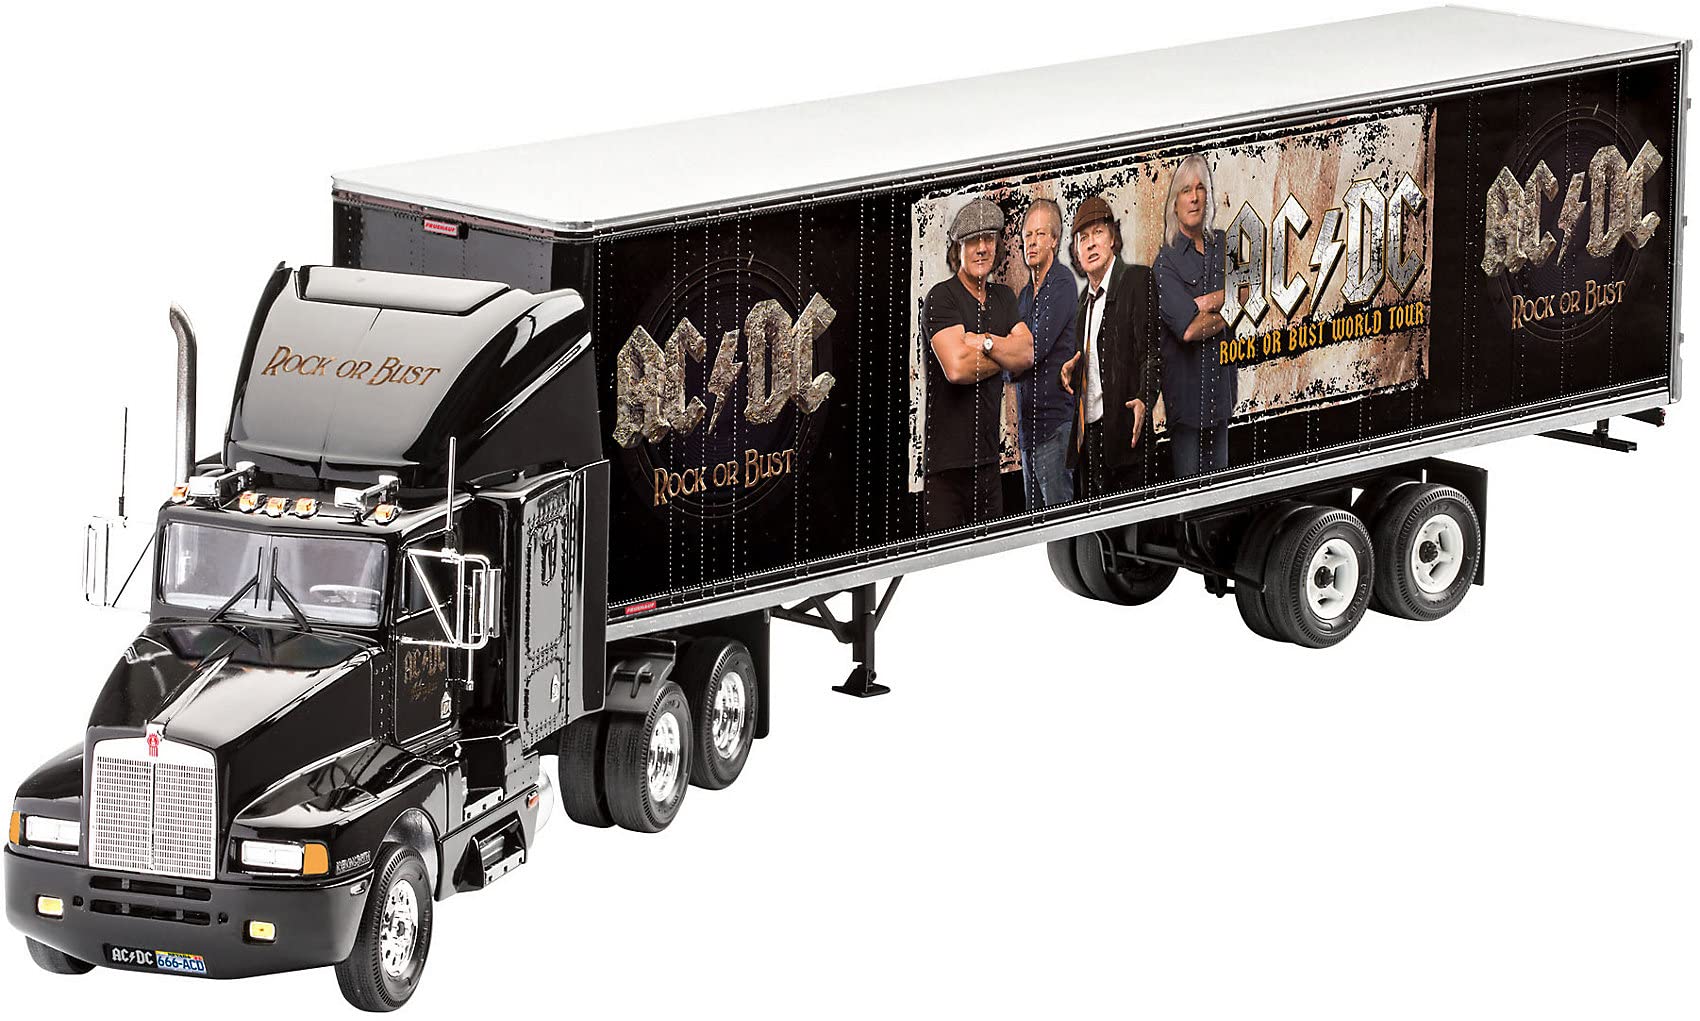 Revell RV07453 Fan-Edition, Geschenkset AC/DC Truck Rock or Bust World Tour, LKW-Bausatz 1:32, Länge 55,2 cm Fanartikel REV-07453, unlackiert